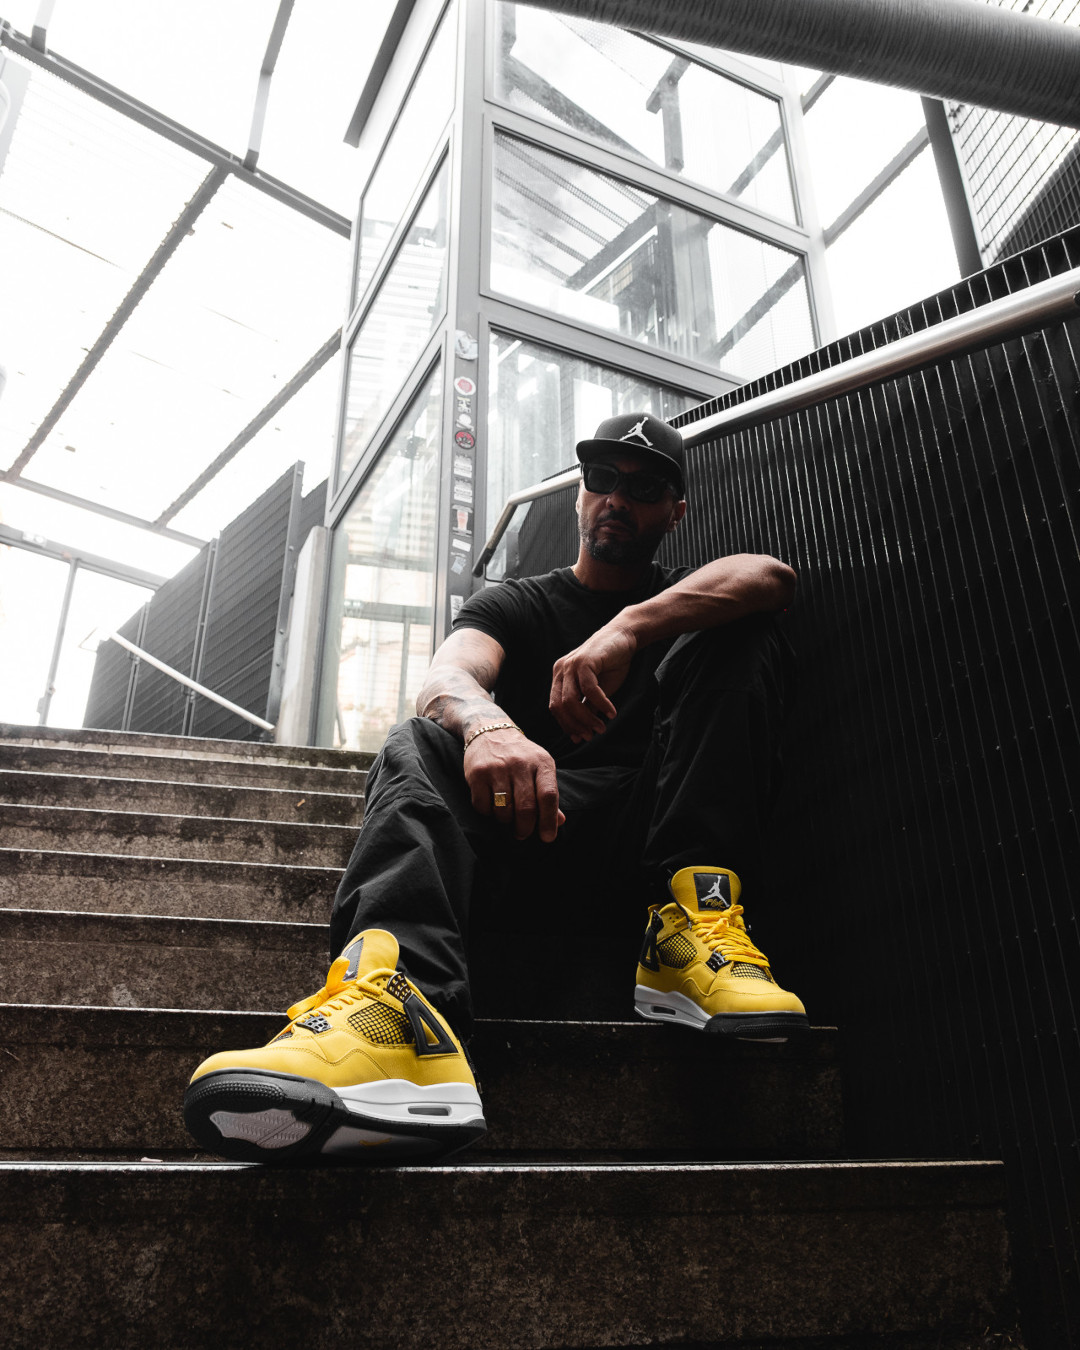 Air Jordan 4 ‘’Tour Yellow’’/’’Lightning